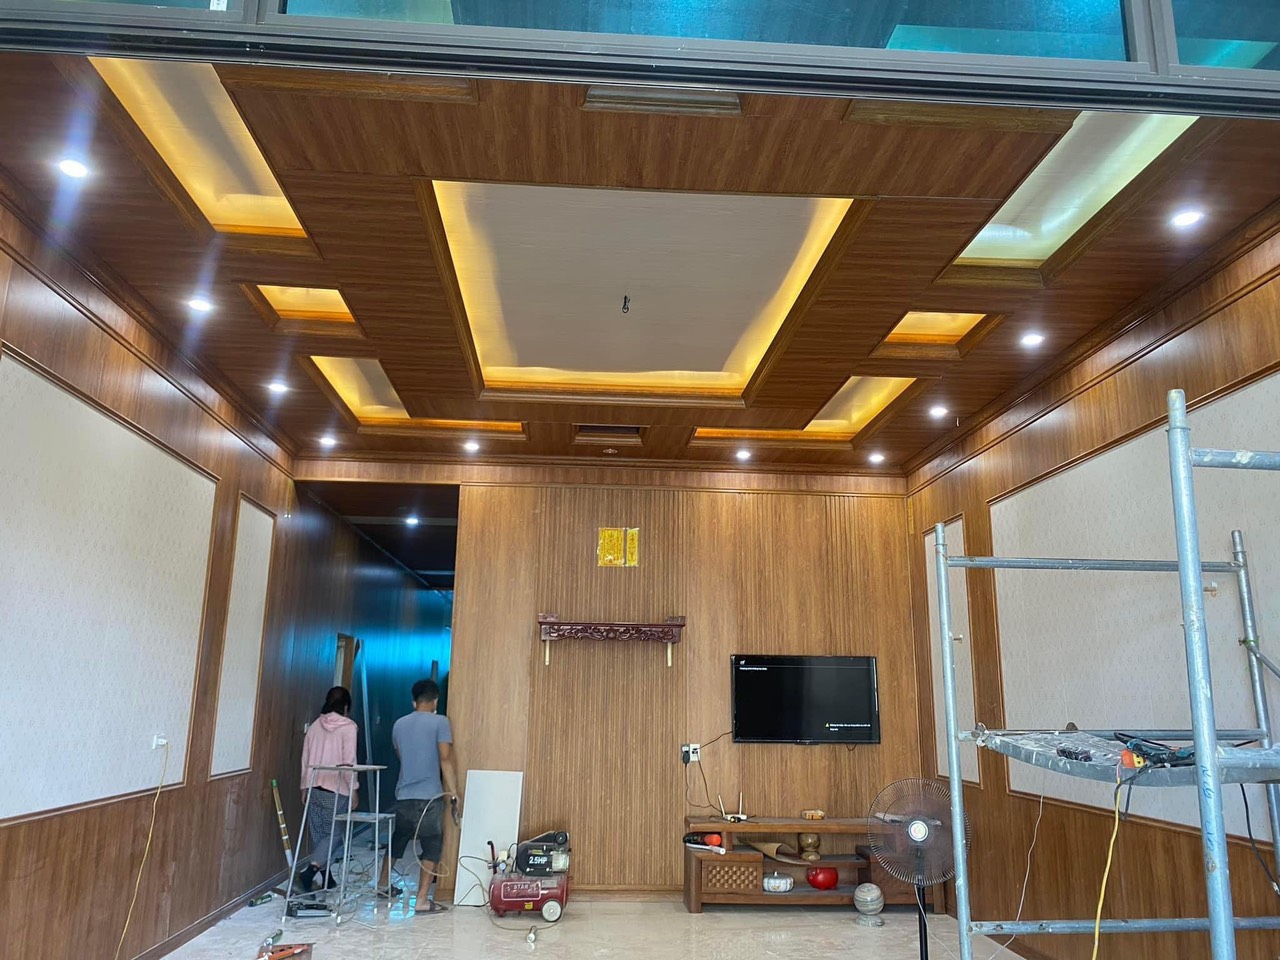 Ốp trần trong nhà tại Hoài Nhơn - Bình Định